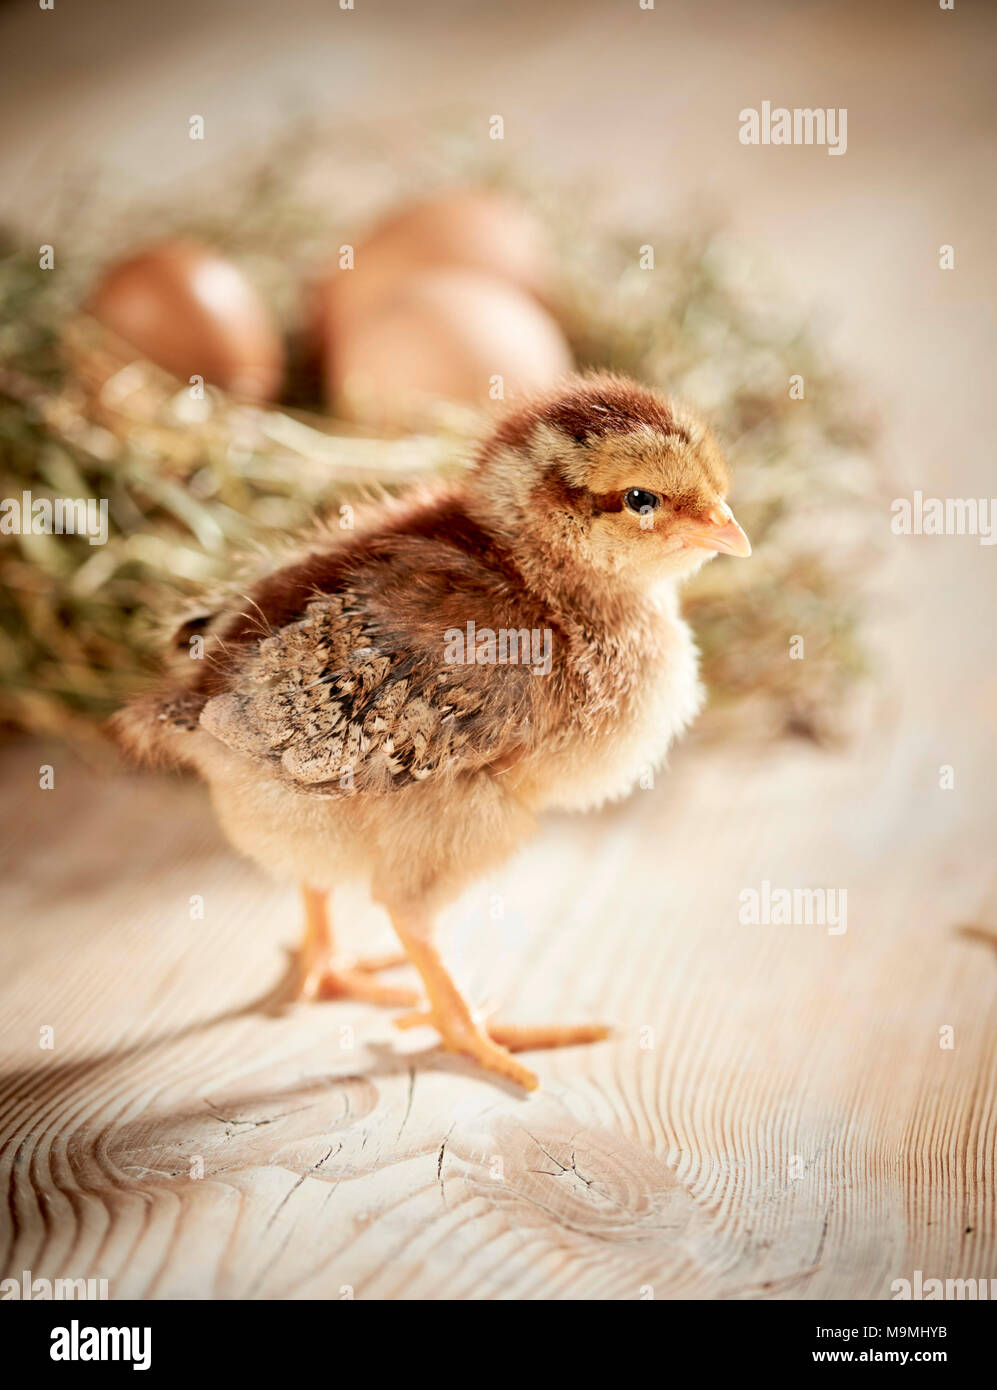 Welsummer pollo. Pollo in piedi sul legno, nella parte anteriore del nido con uova. Germania Foto Stock